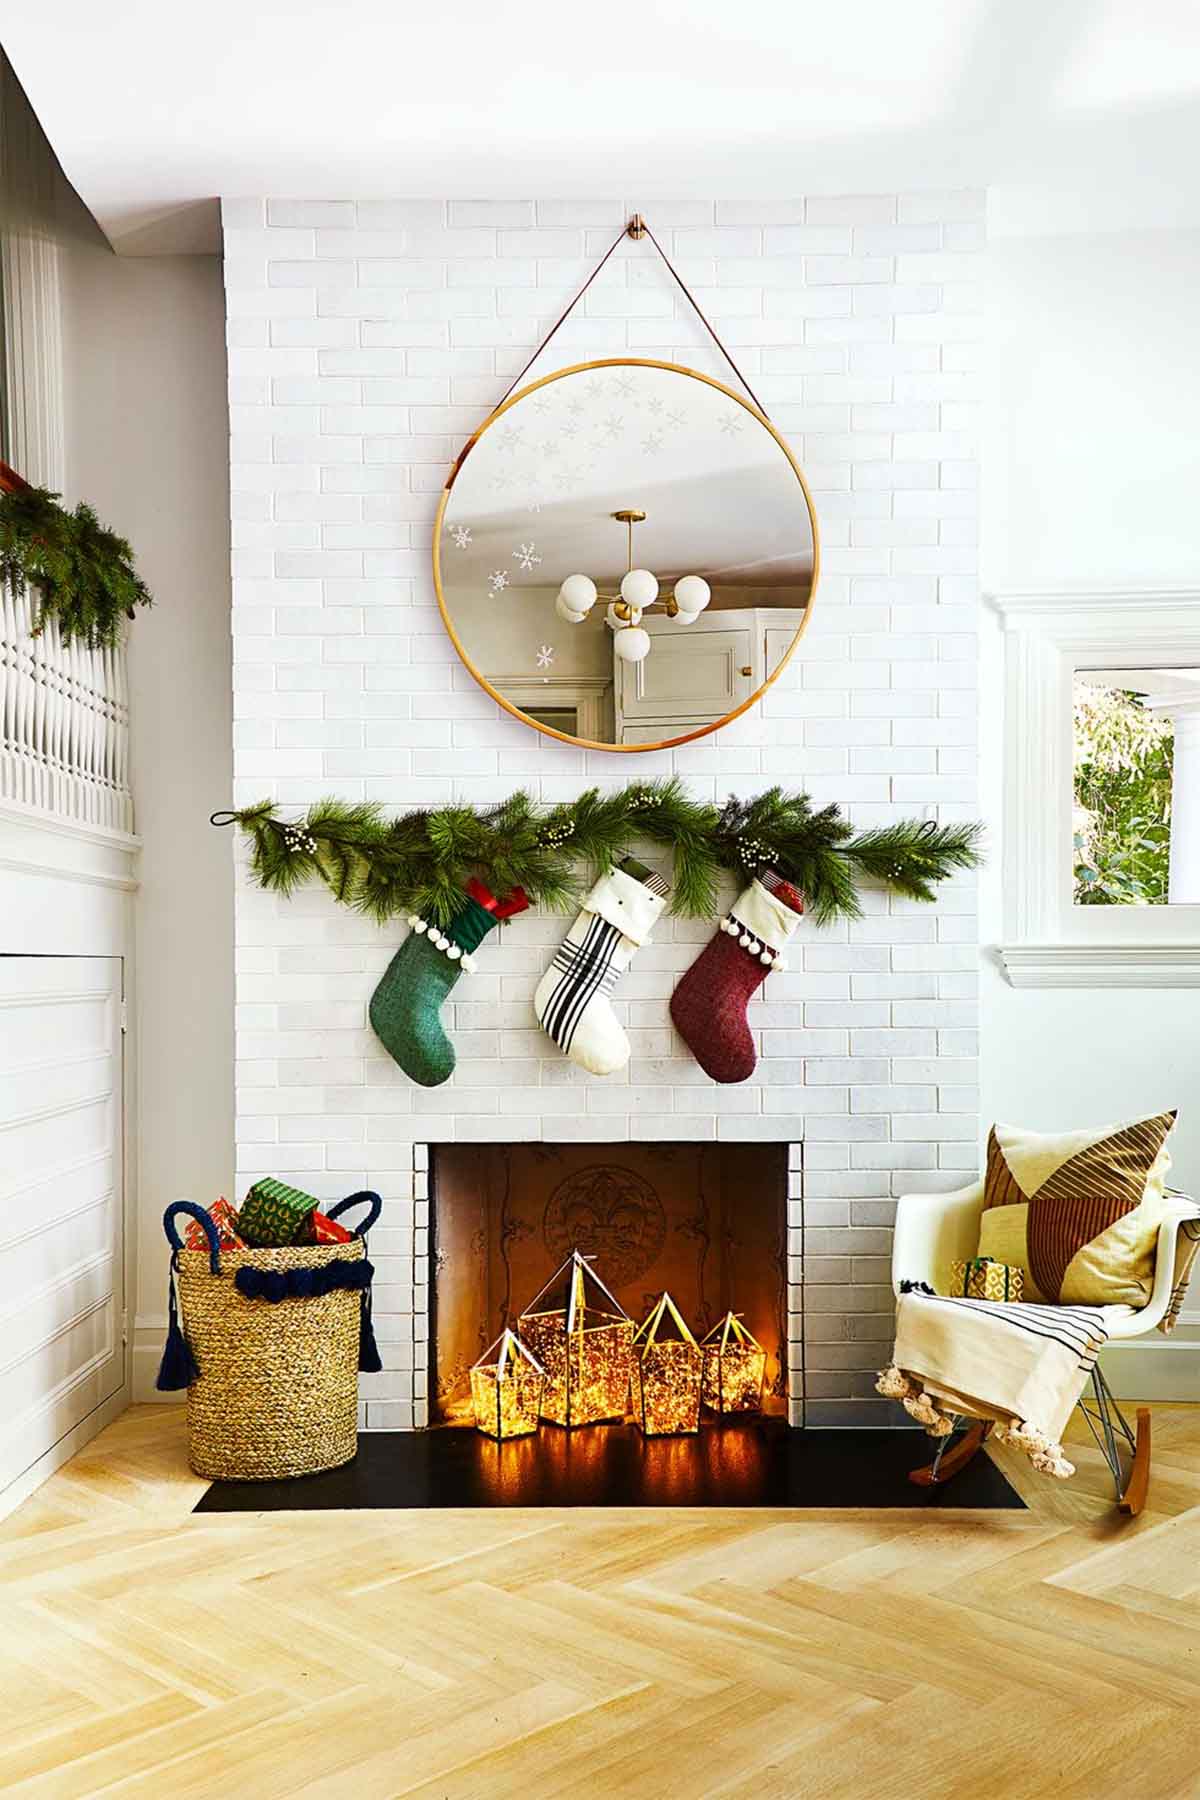 تزیین کریسمس در خانه با دیزاین جوراب بالای شومینه و شاخ و برگ های سبز